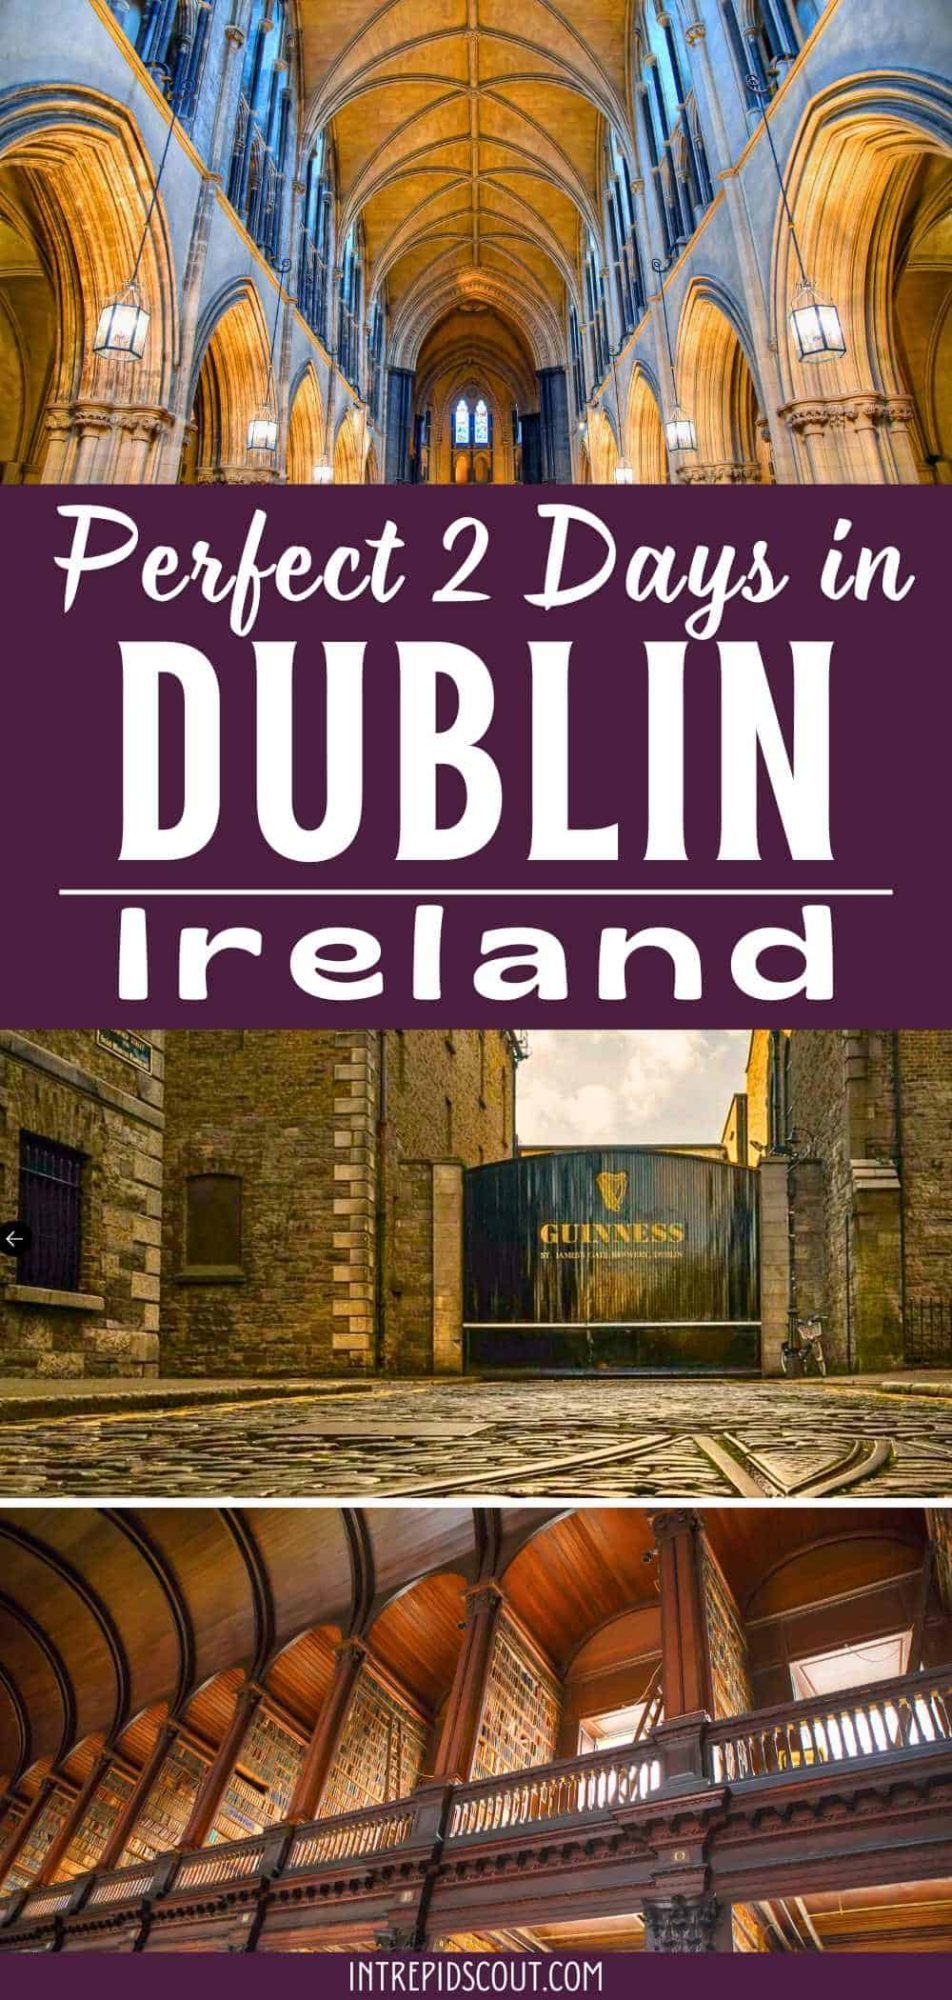 2 Days in Dublin